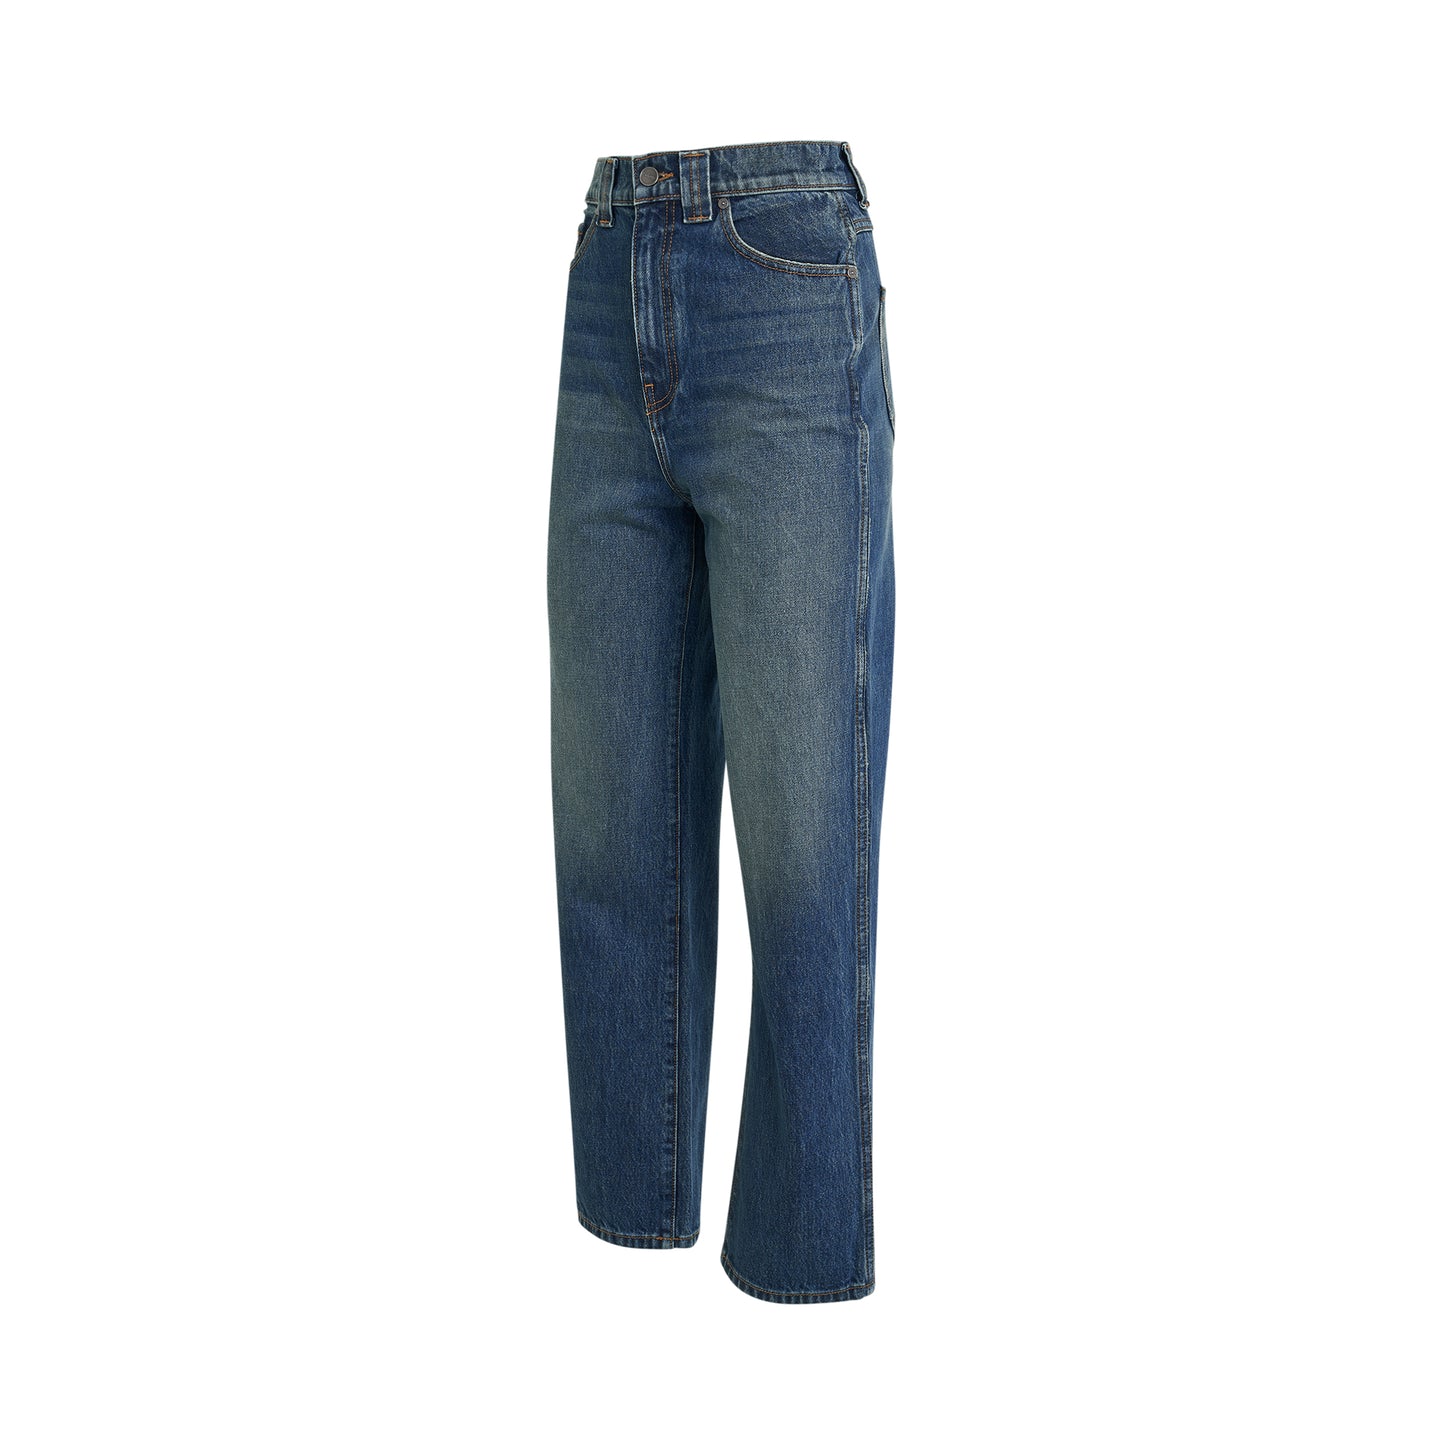 Shalbi Jeans in Stinson